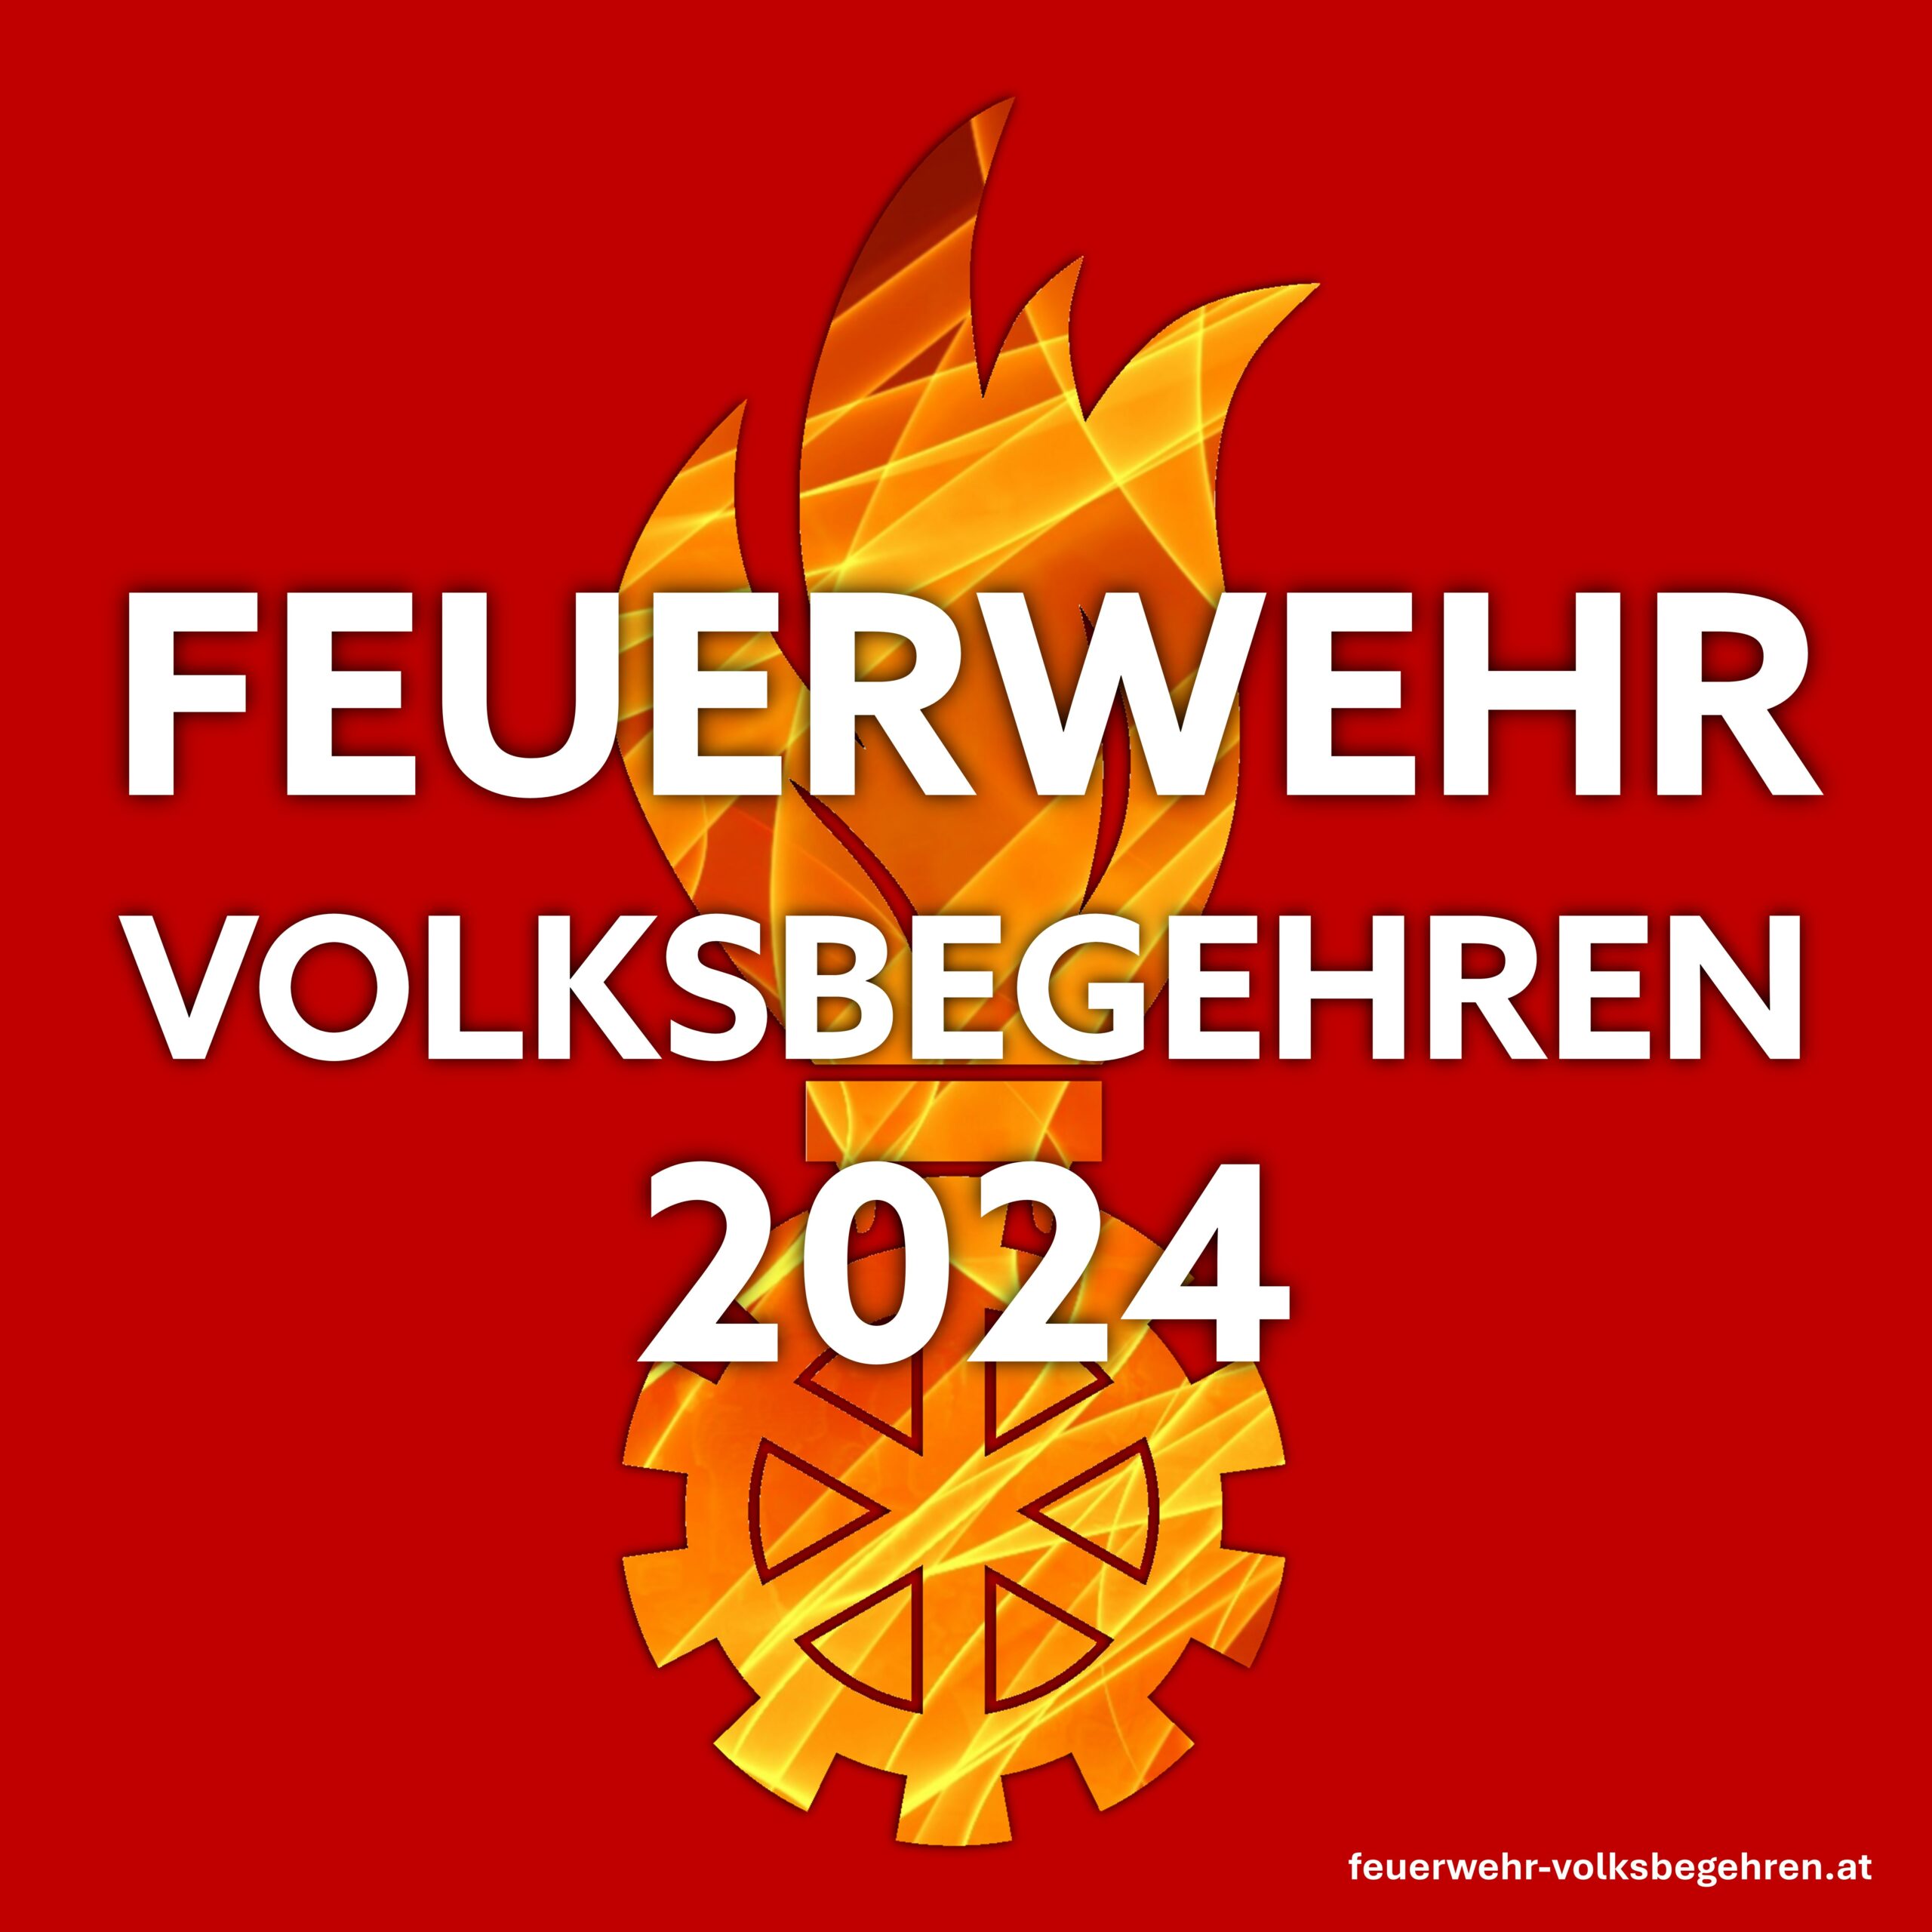 Feuerwehr Volksbegehren 2024